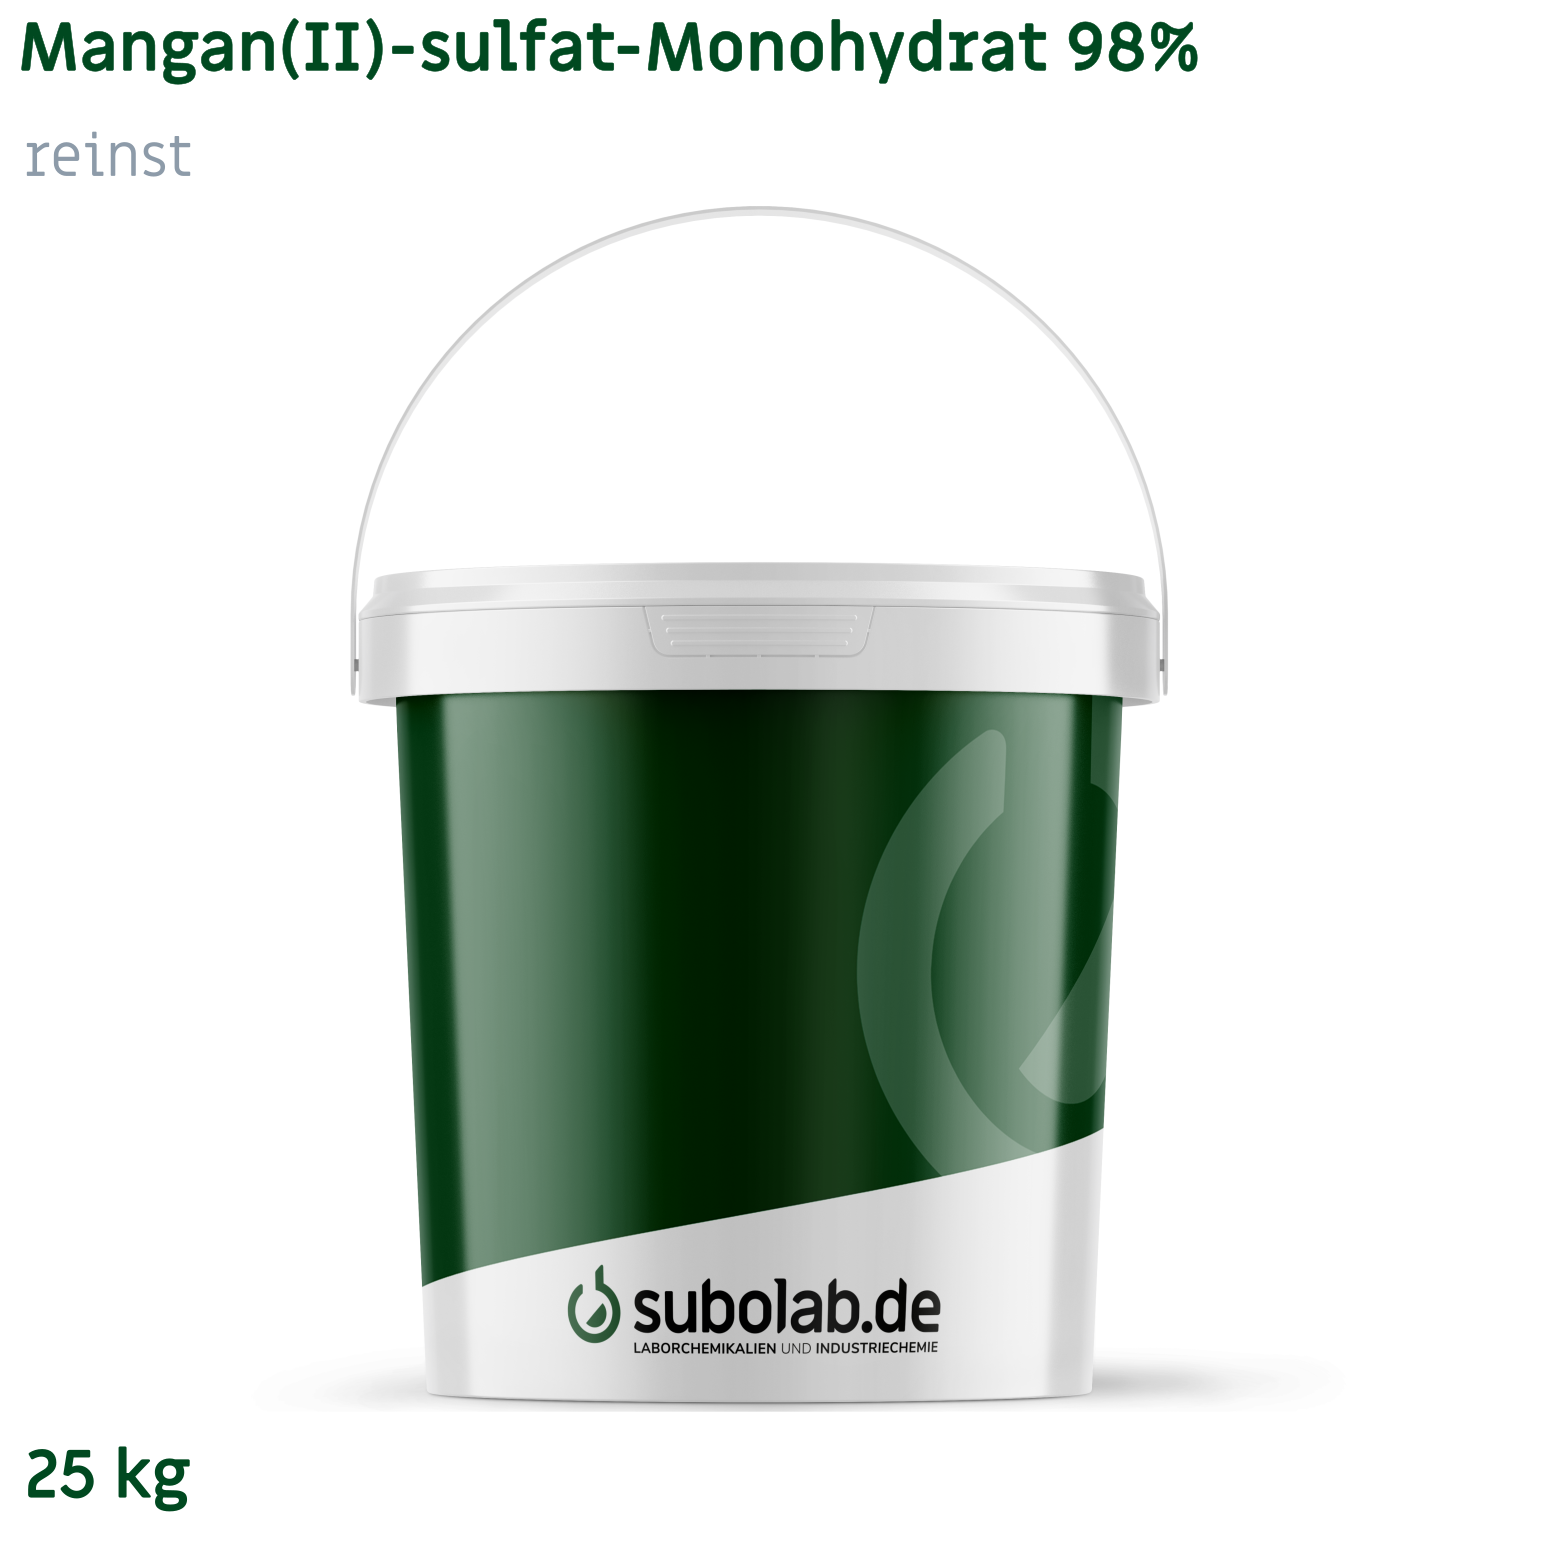 Bild von Mangan(II)-sulfat - Monohydrat 98% reinst (25 kg)